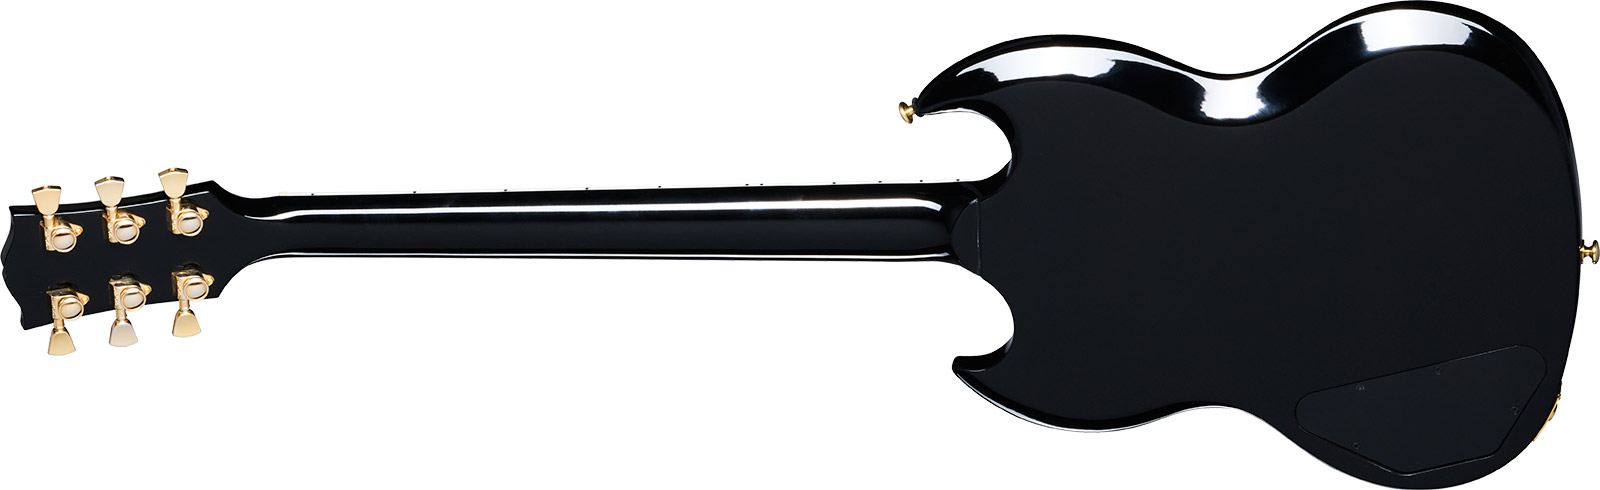 Gibson Sg Supreme Usa 2h Ht Rw - Fireburst - Guitare Électrique Double Cut - Variation 1